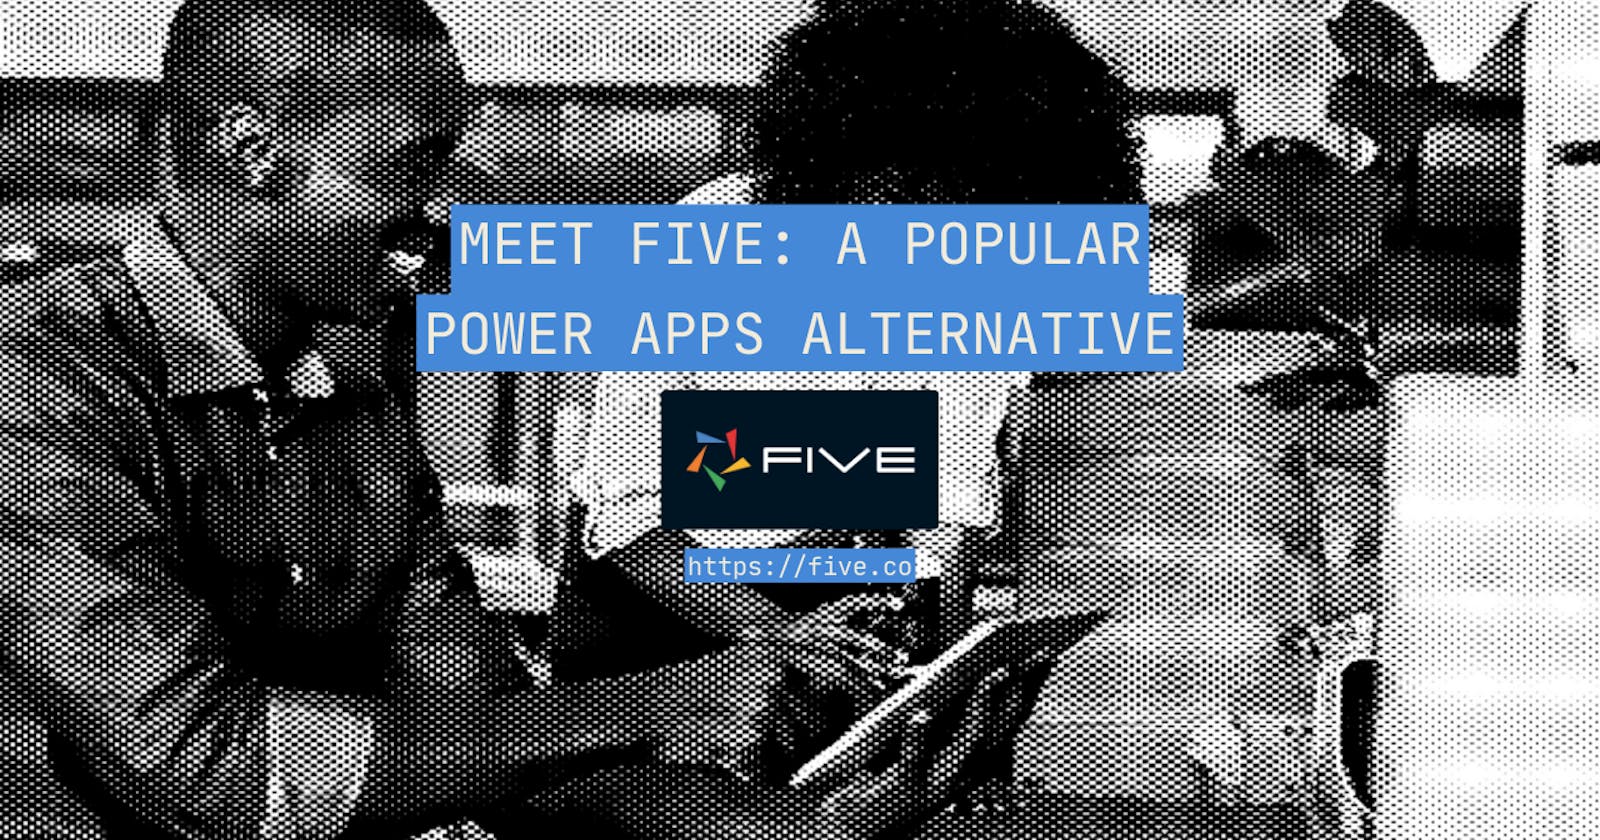 Meet Five: A Popular Power Apps Alternative